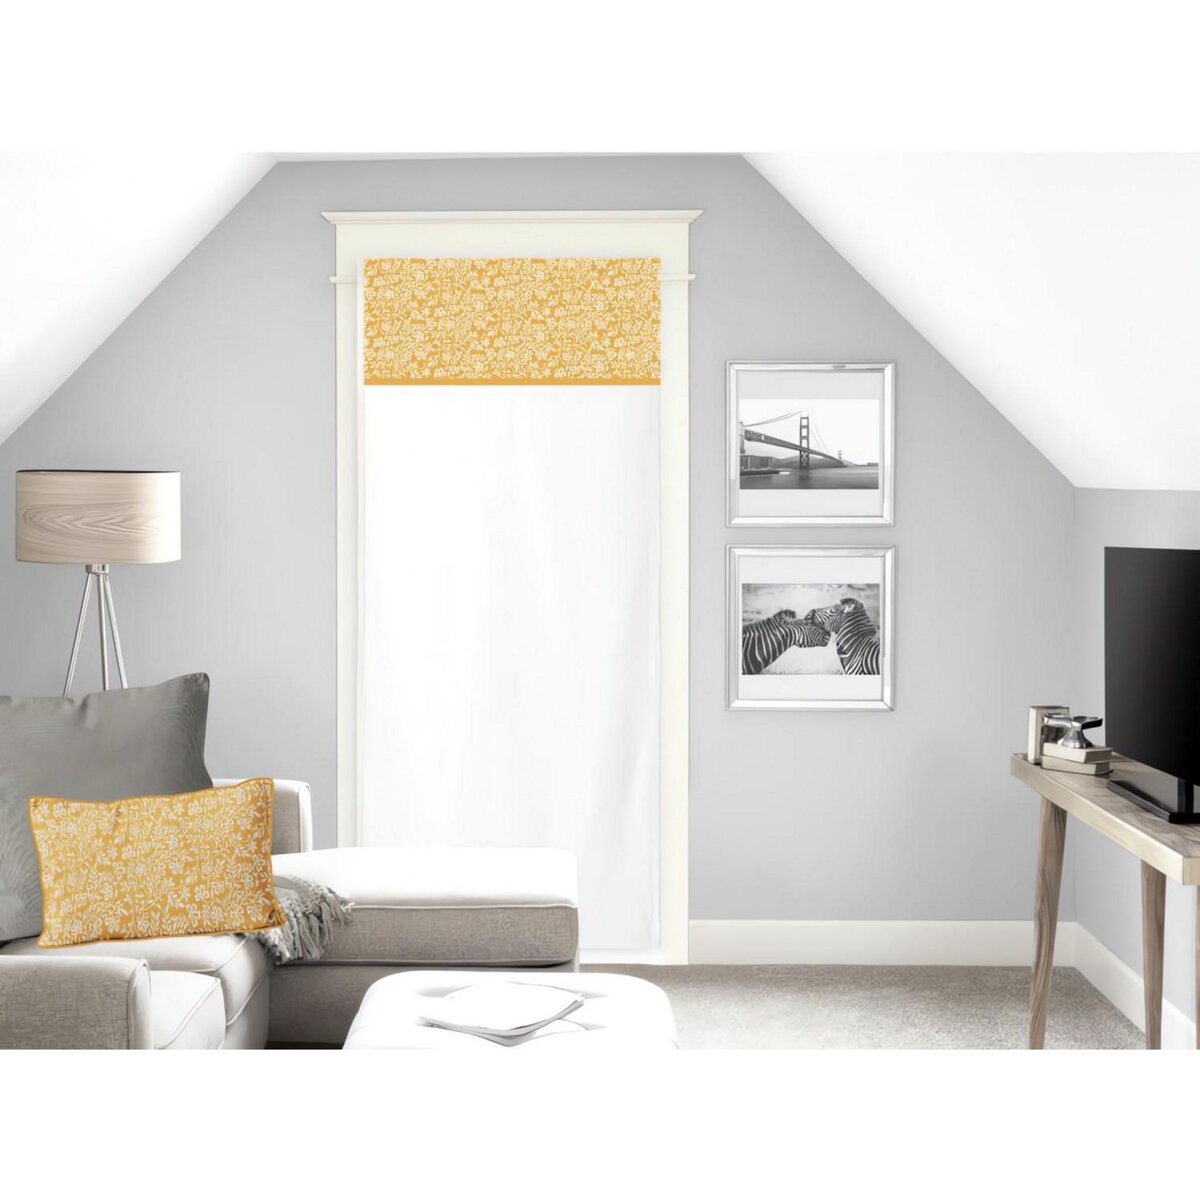 SOLEIL D'OCRE Voilage porte-fenêtre pur coton 70x200 cm VINTAGE moutarde, par Soleil d'Ocre